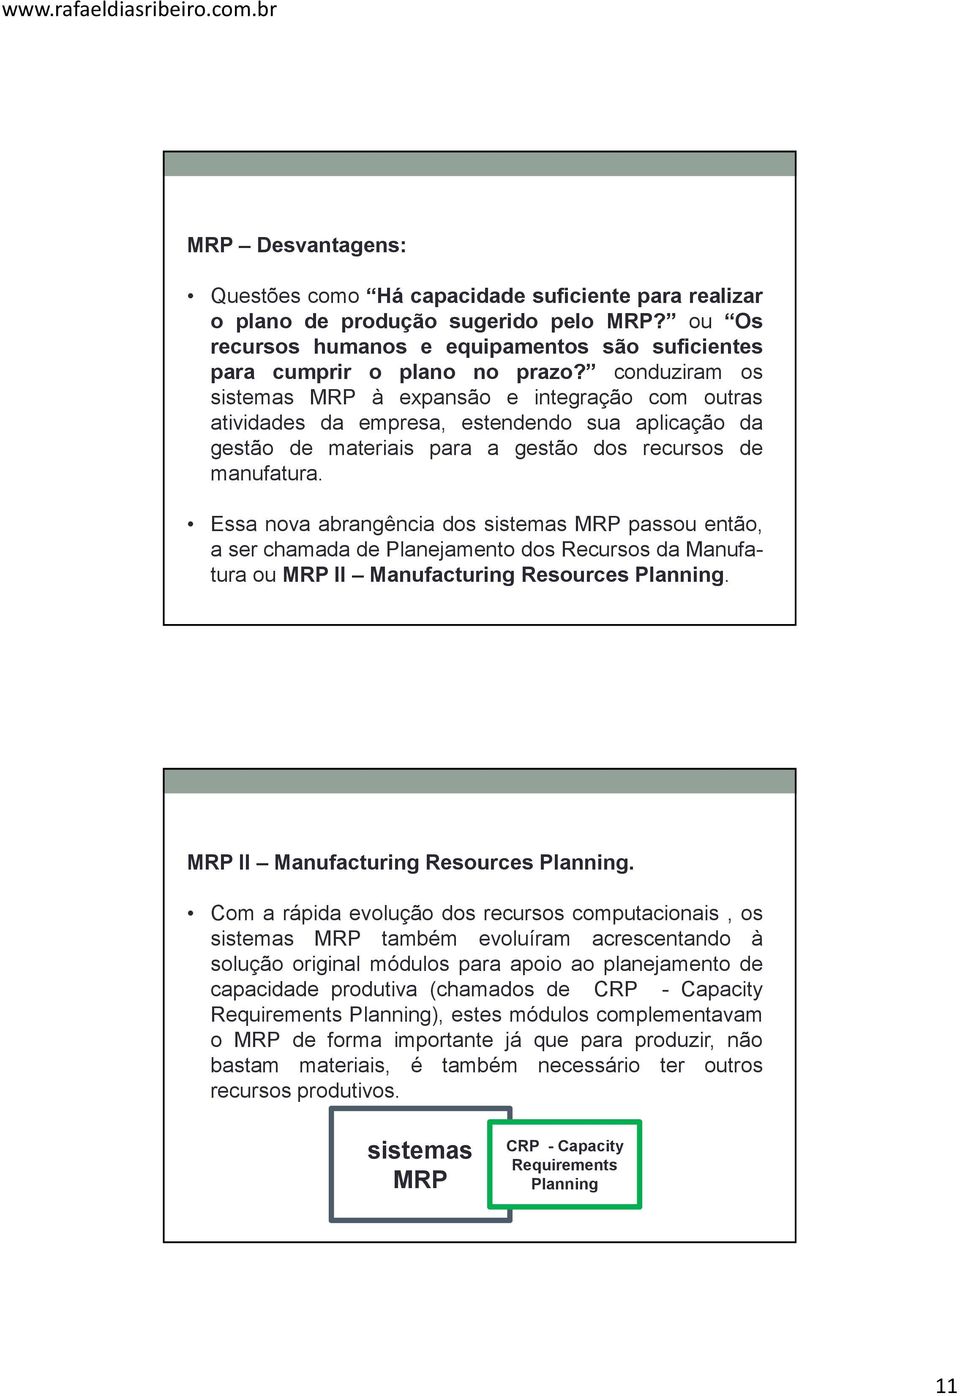 Essa nova abrangência dos sistemas MRP passou então, a ser chamada de Planejamento dos Recursos da Manufatura ou MRP II Manufacturing Resources Planning.